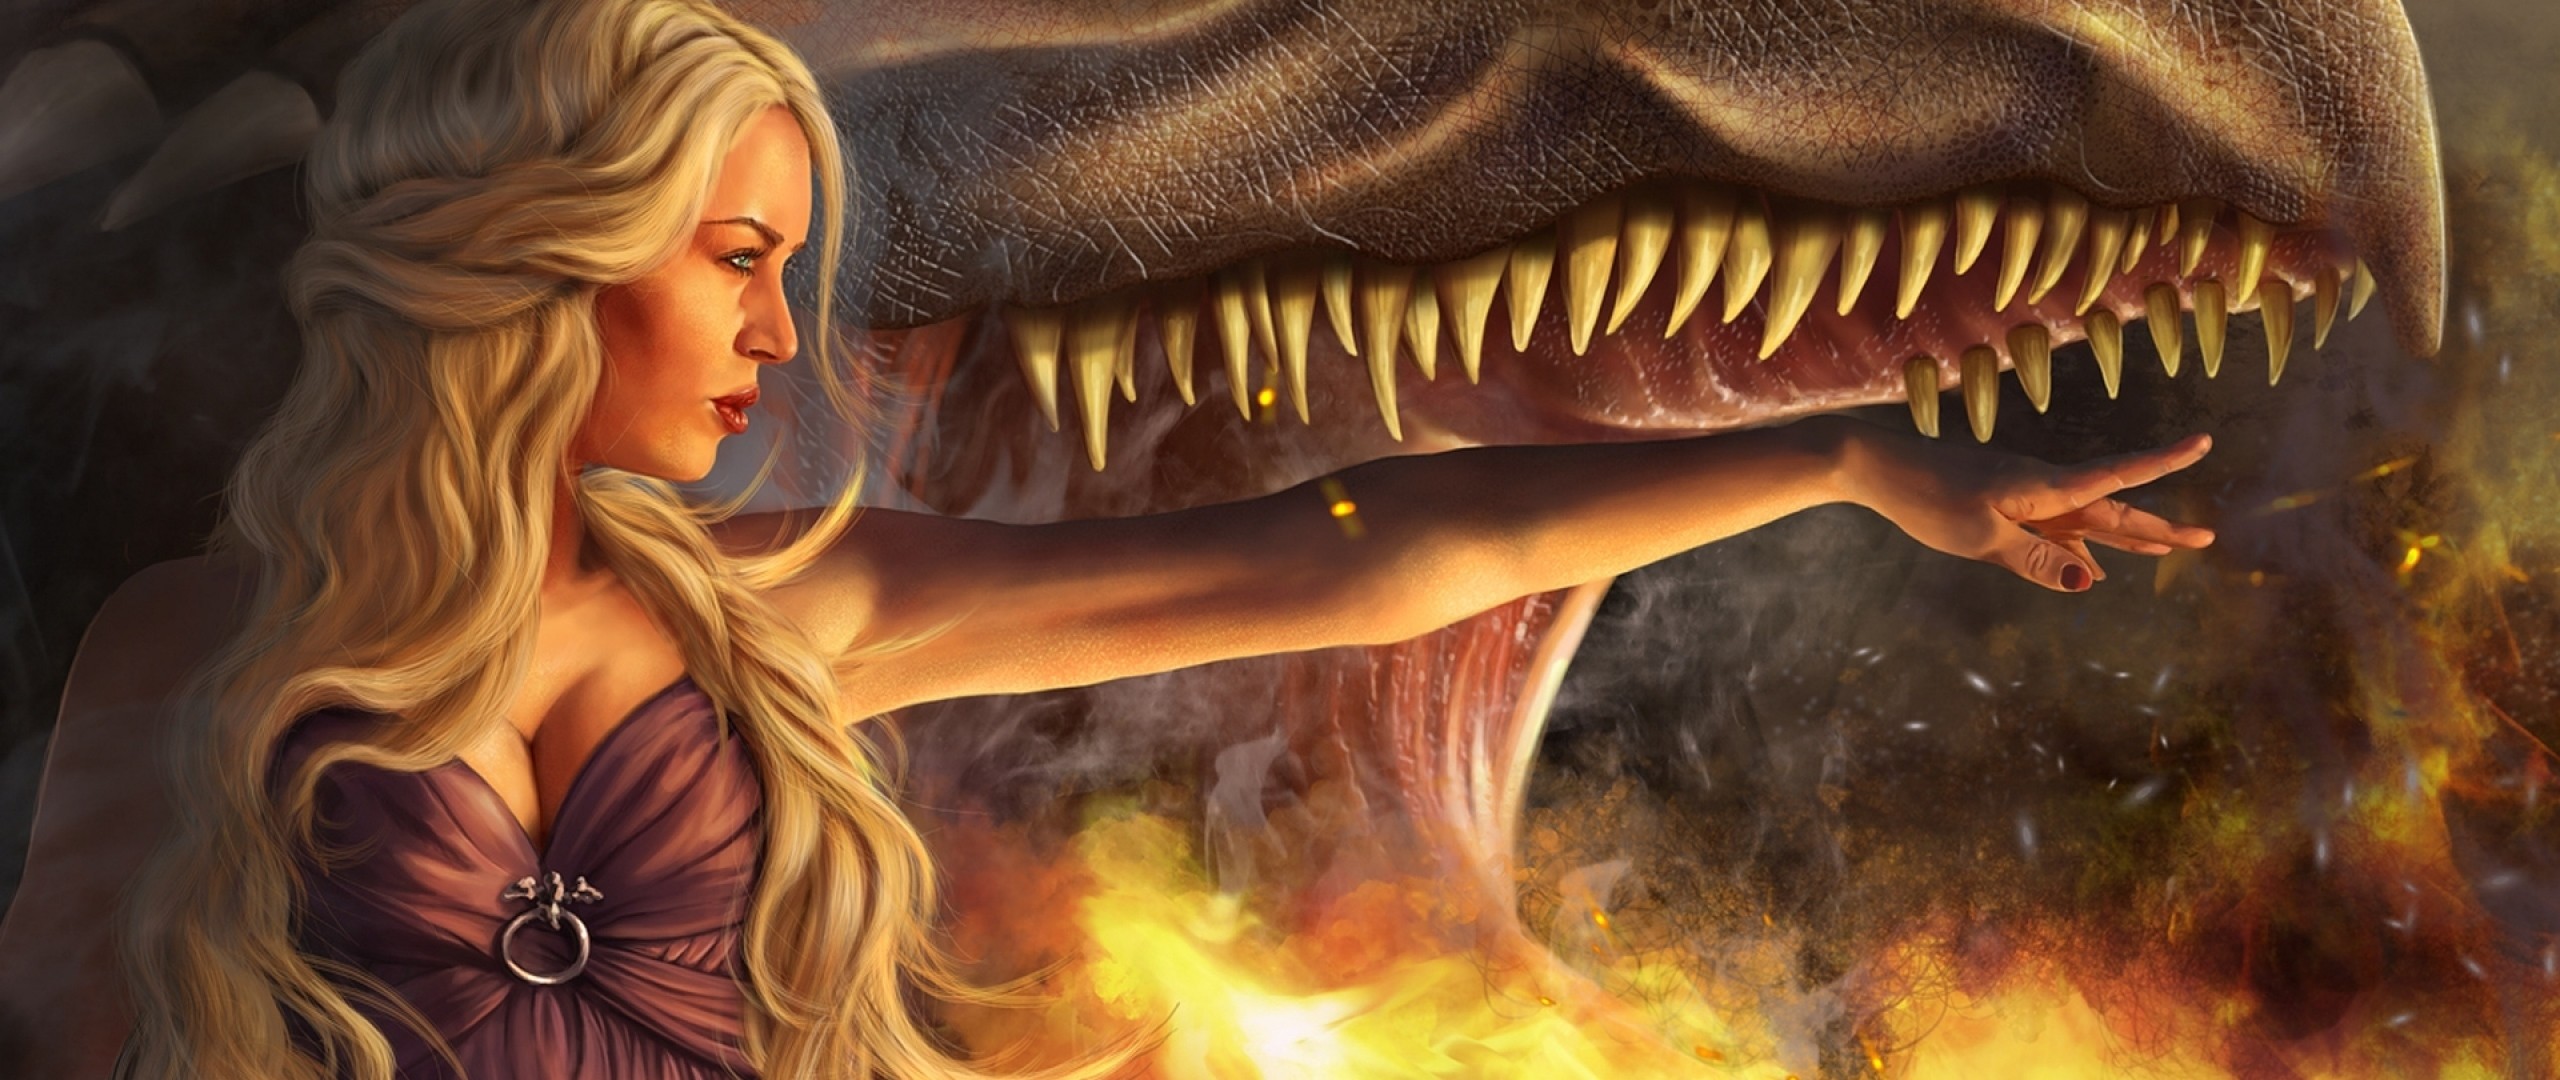 2560x1080 Preview wallpaper game of thrones, daenerys targaryen, girl, blonde,  dragon, jaws